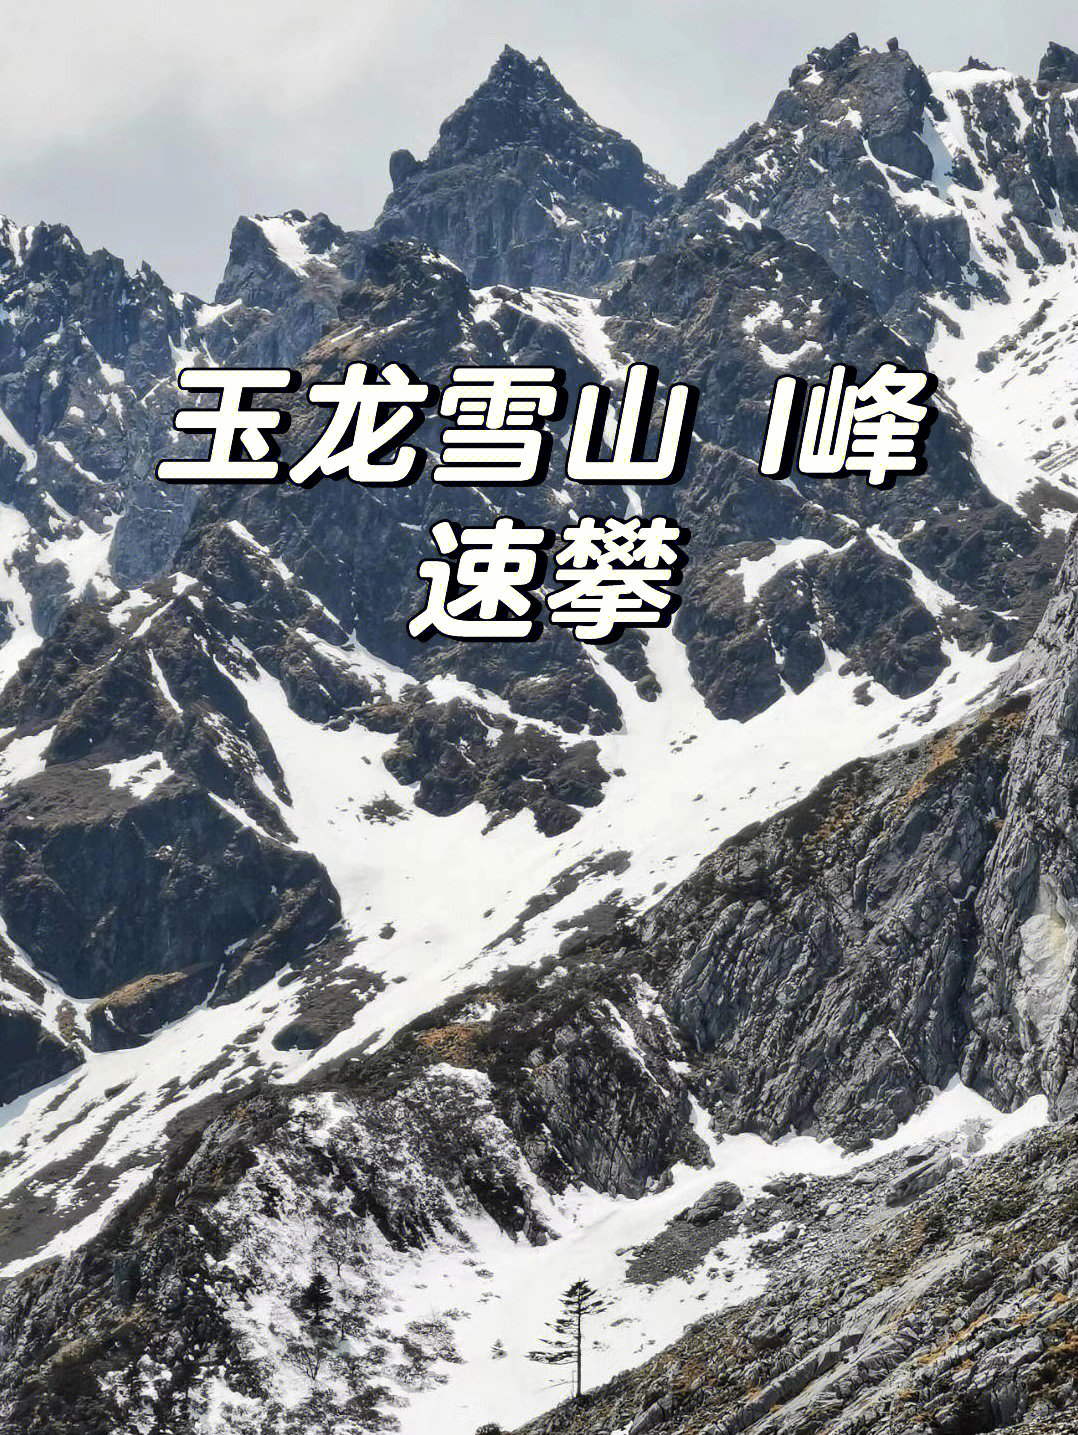 玉龙雪山十三峰名称图片